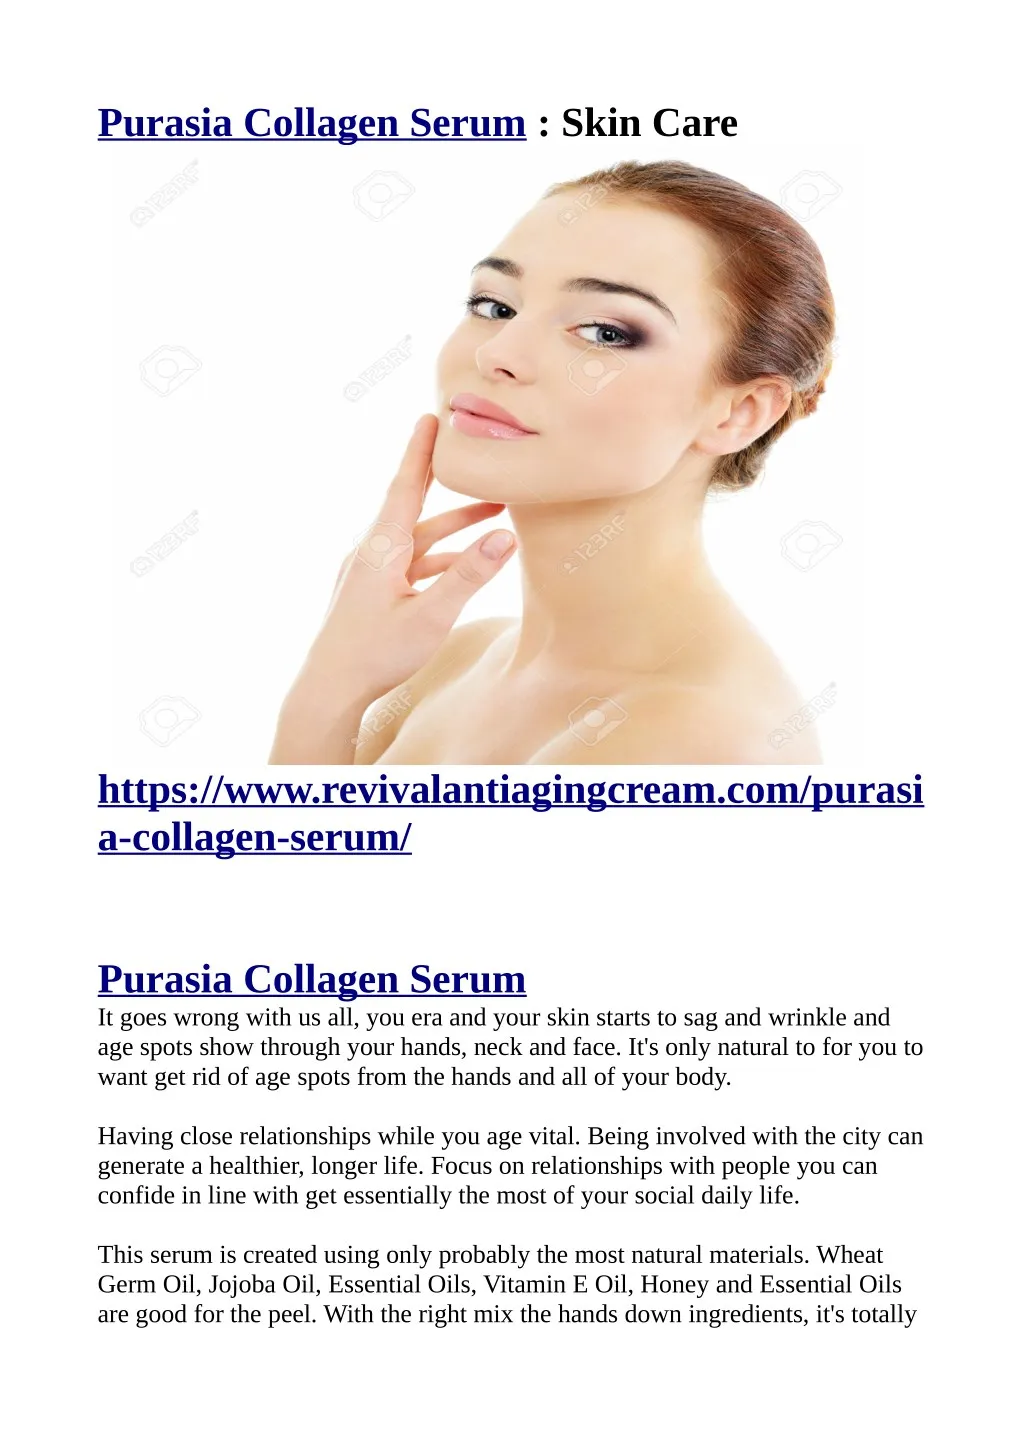 purasia collagen serum skin care